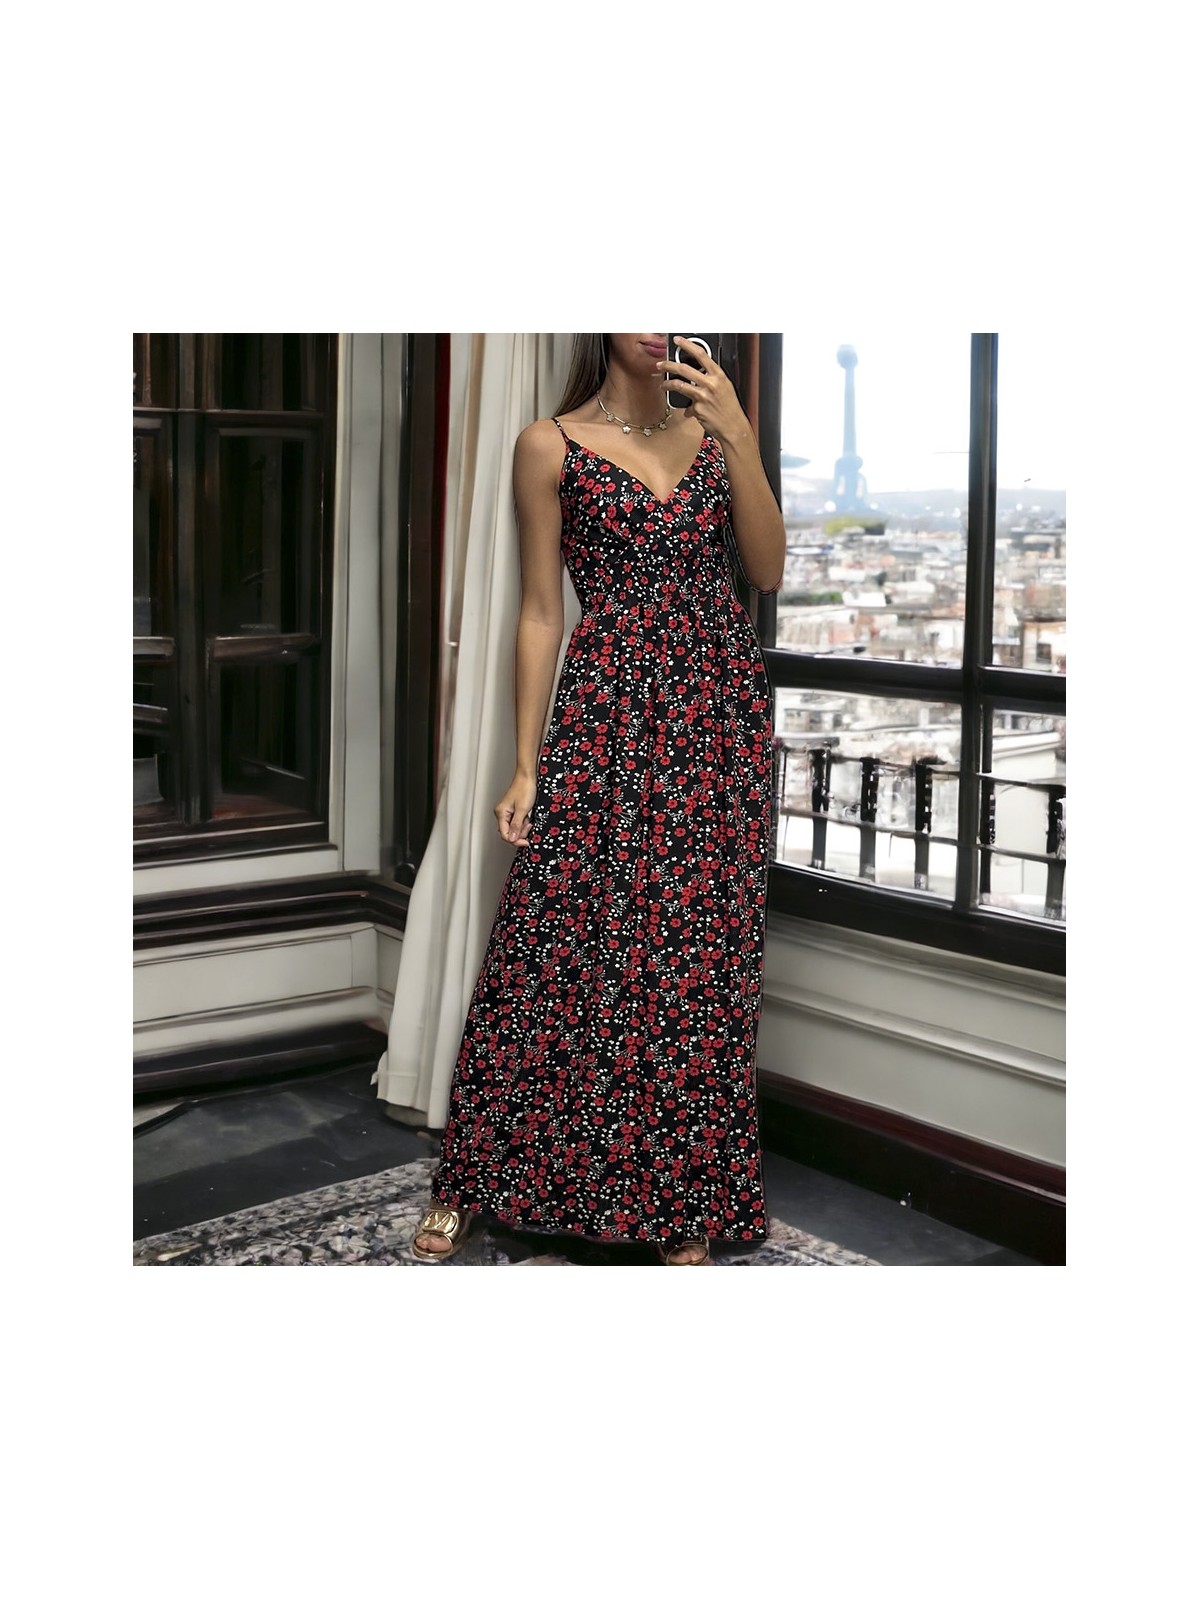 Longue robe motif fleuris noir et rouge bretelles amovible - 2